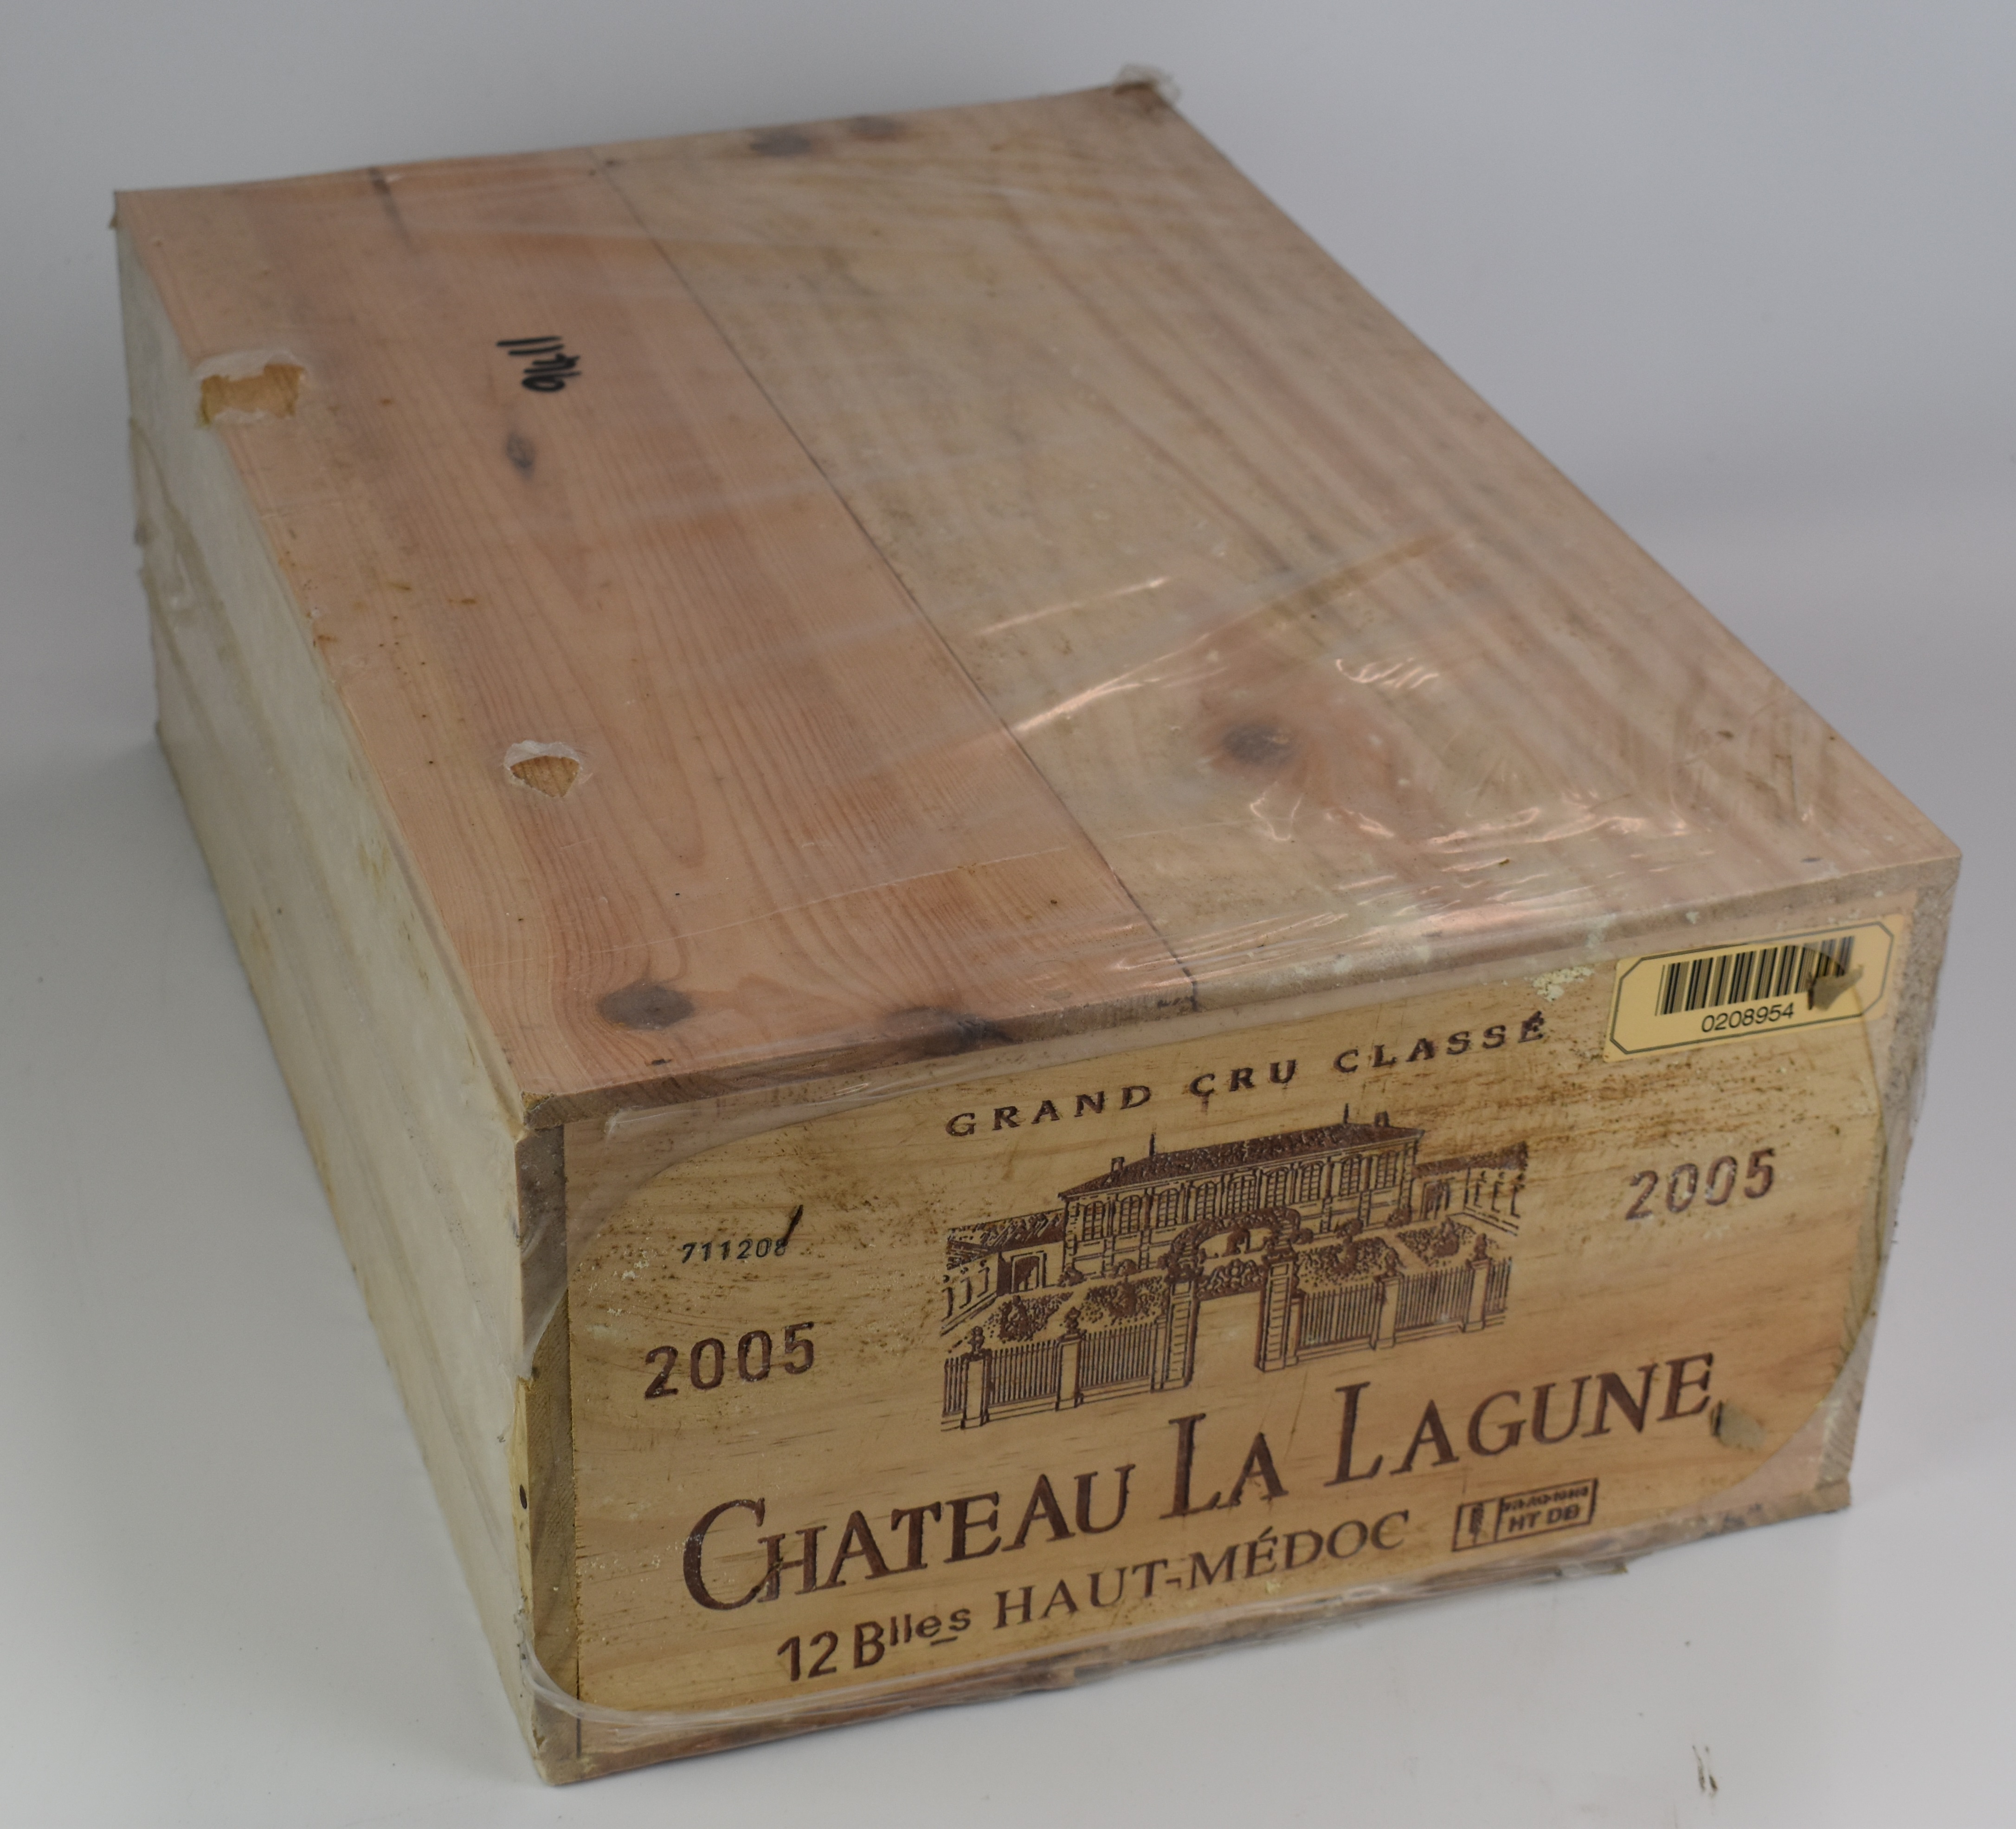 Case of twelve bottles of Chateau la Lagune Haute Médoc 2005